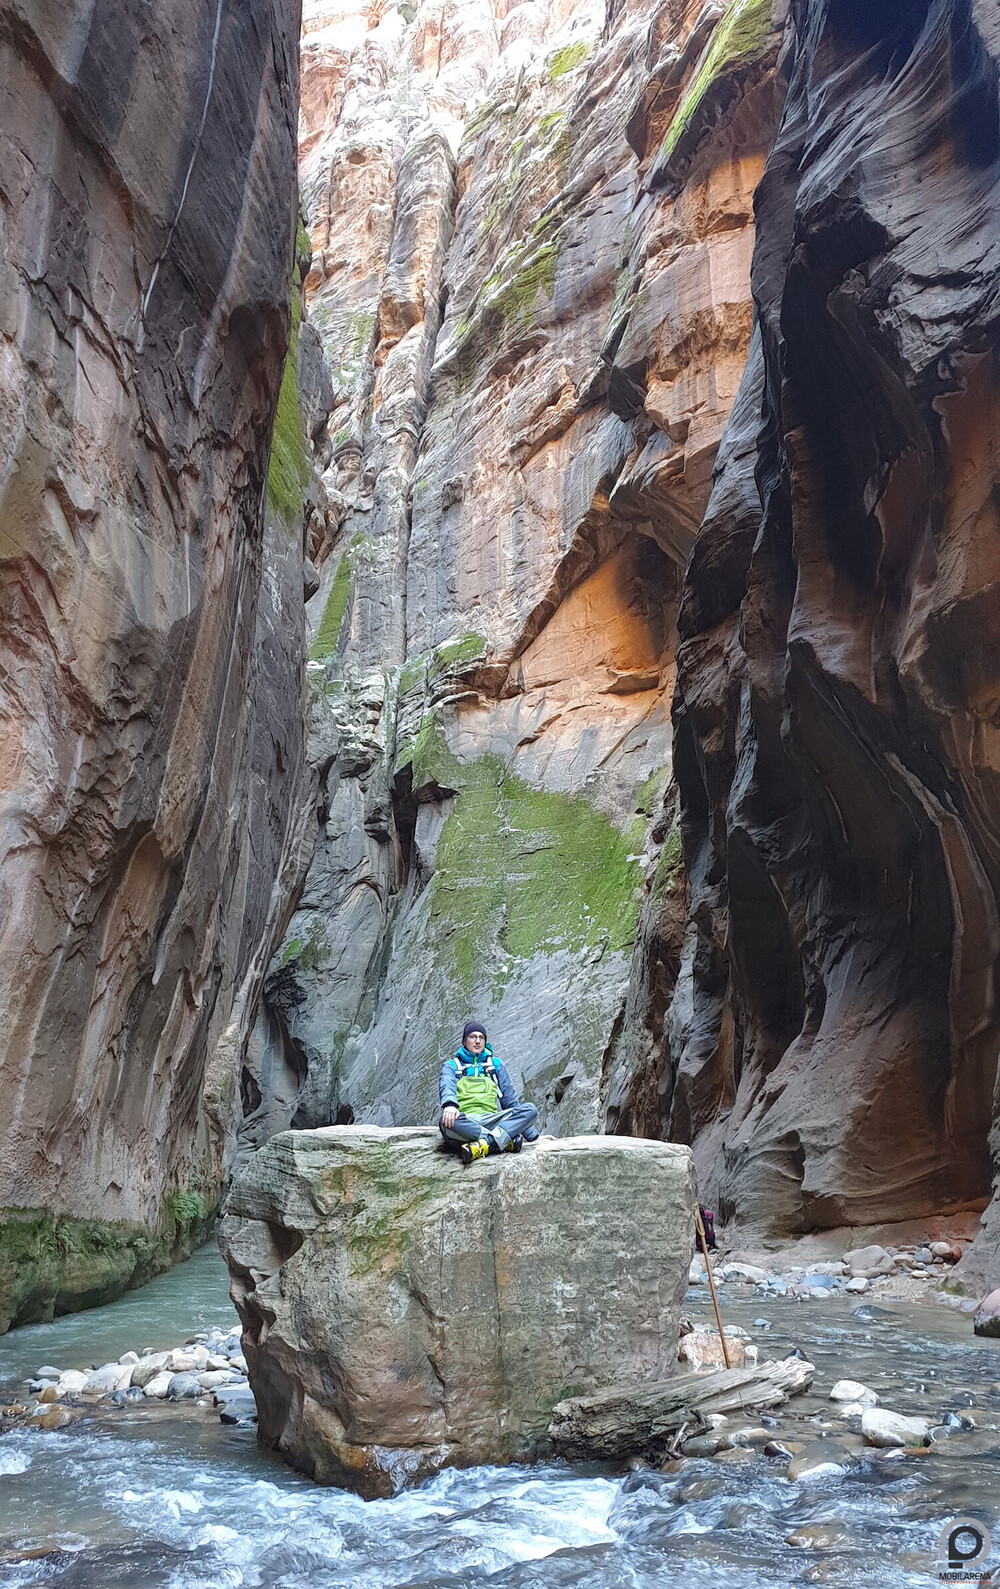 A munka után kis kikapcsolódás: Bone123 épp a Zion Narrows Canyon egyik szikláján pihen